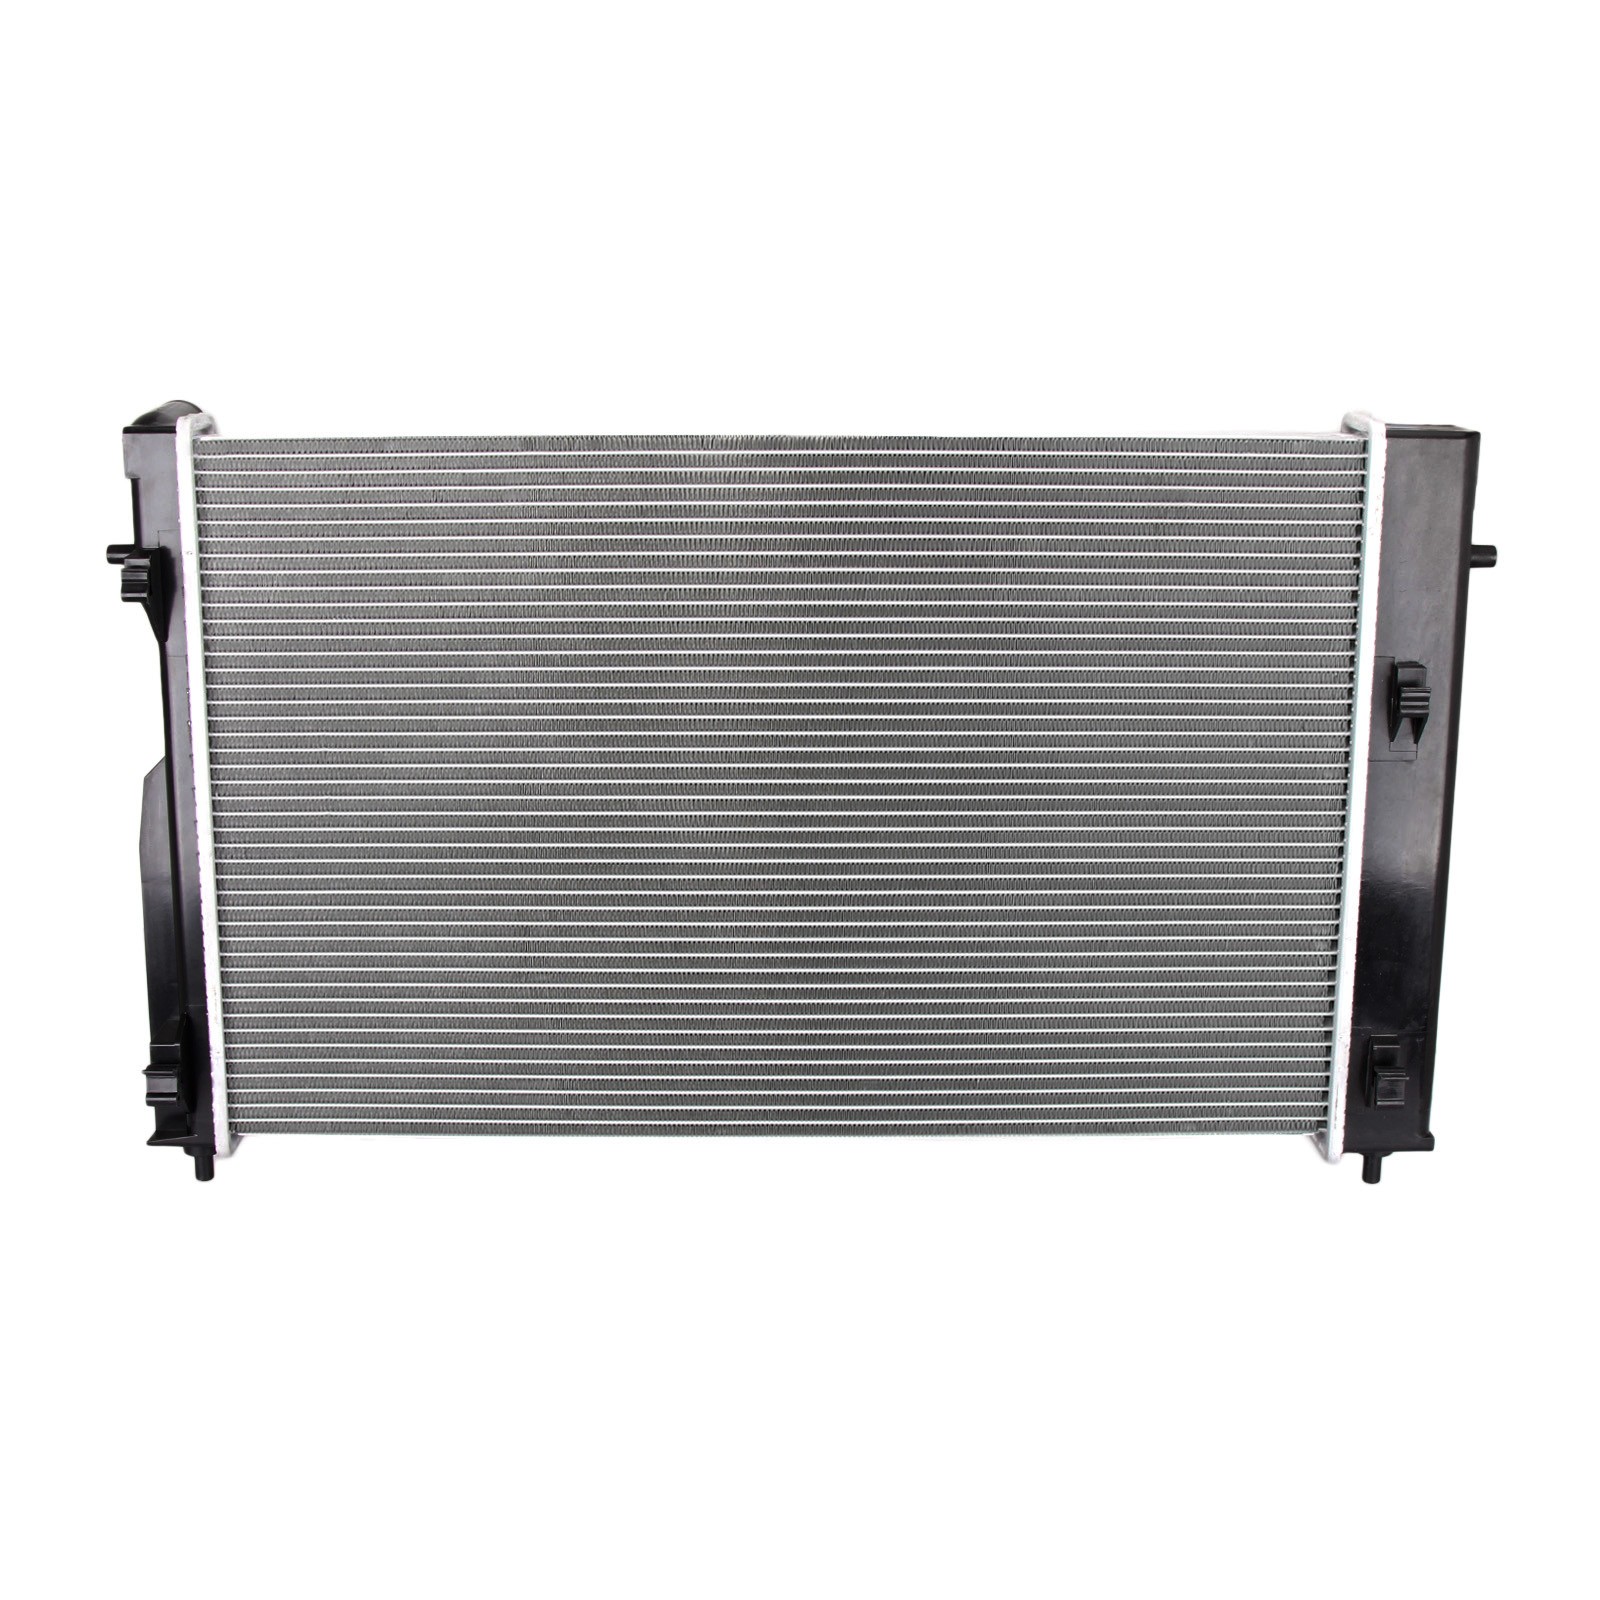 Dromedary-High Quality New 2688 Full Aluminum Radiator For Lexus Rx 330 33-202-v6-1